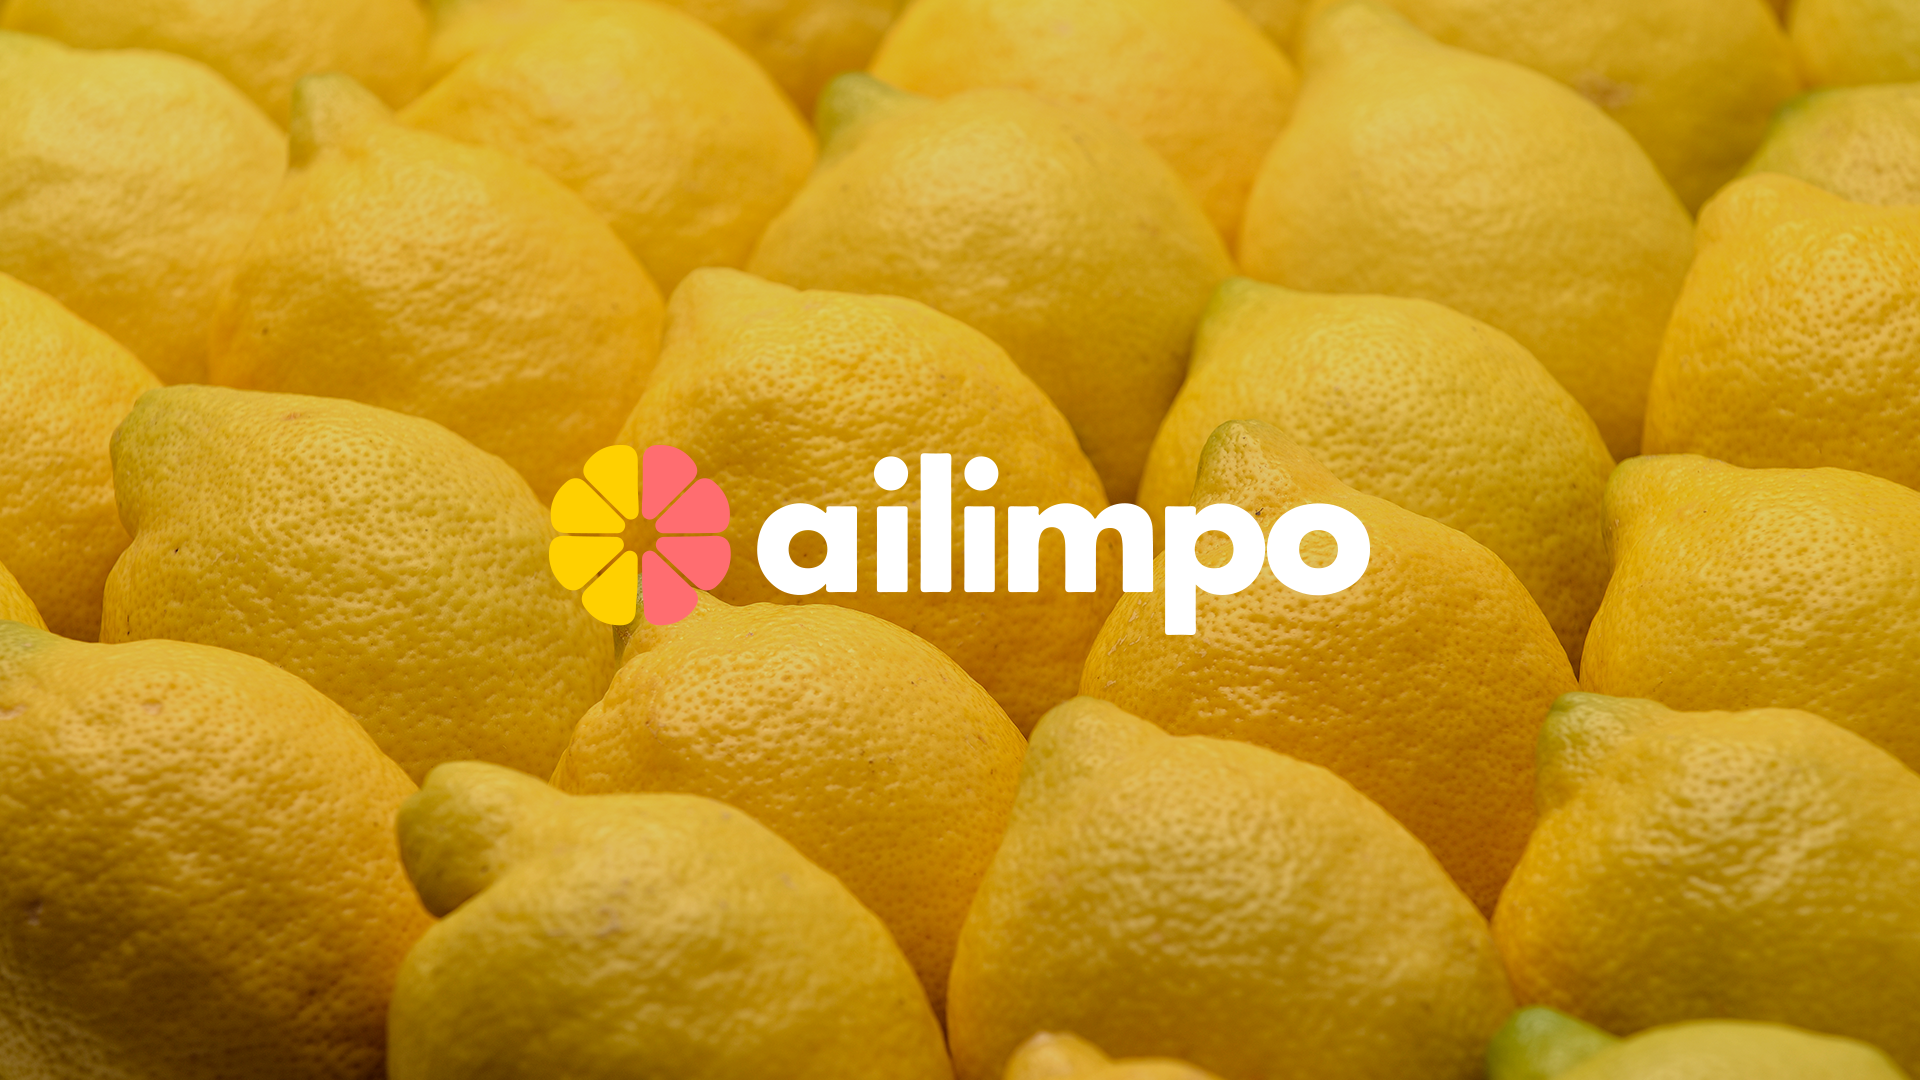 Imagen de limones con el logotipo de Ailimpo